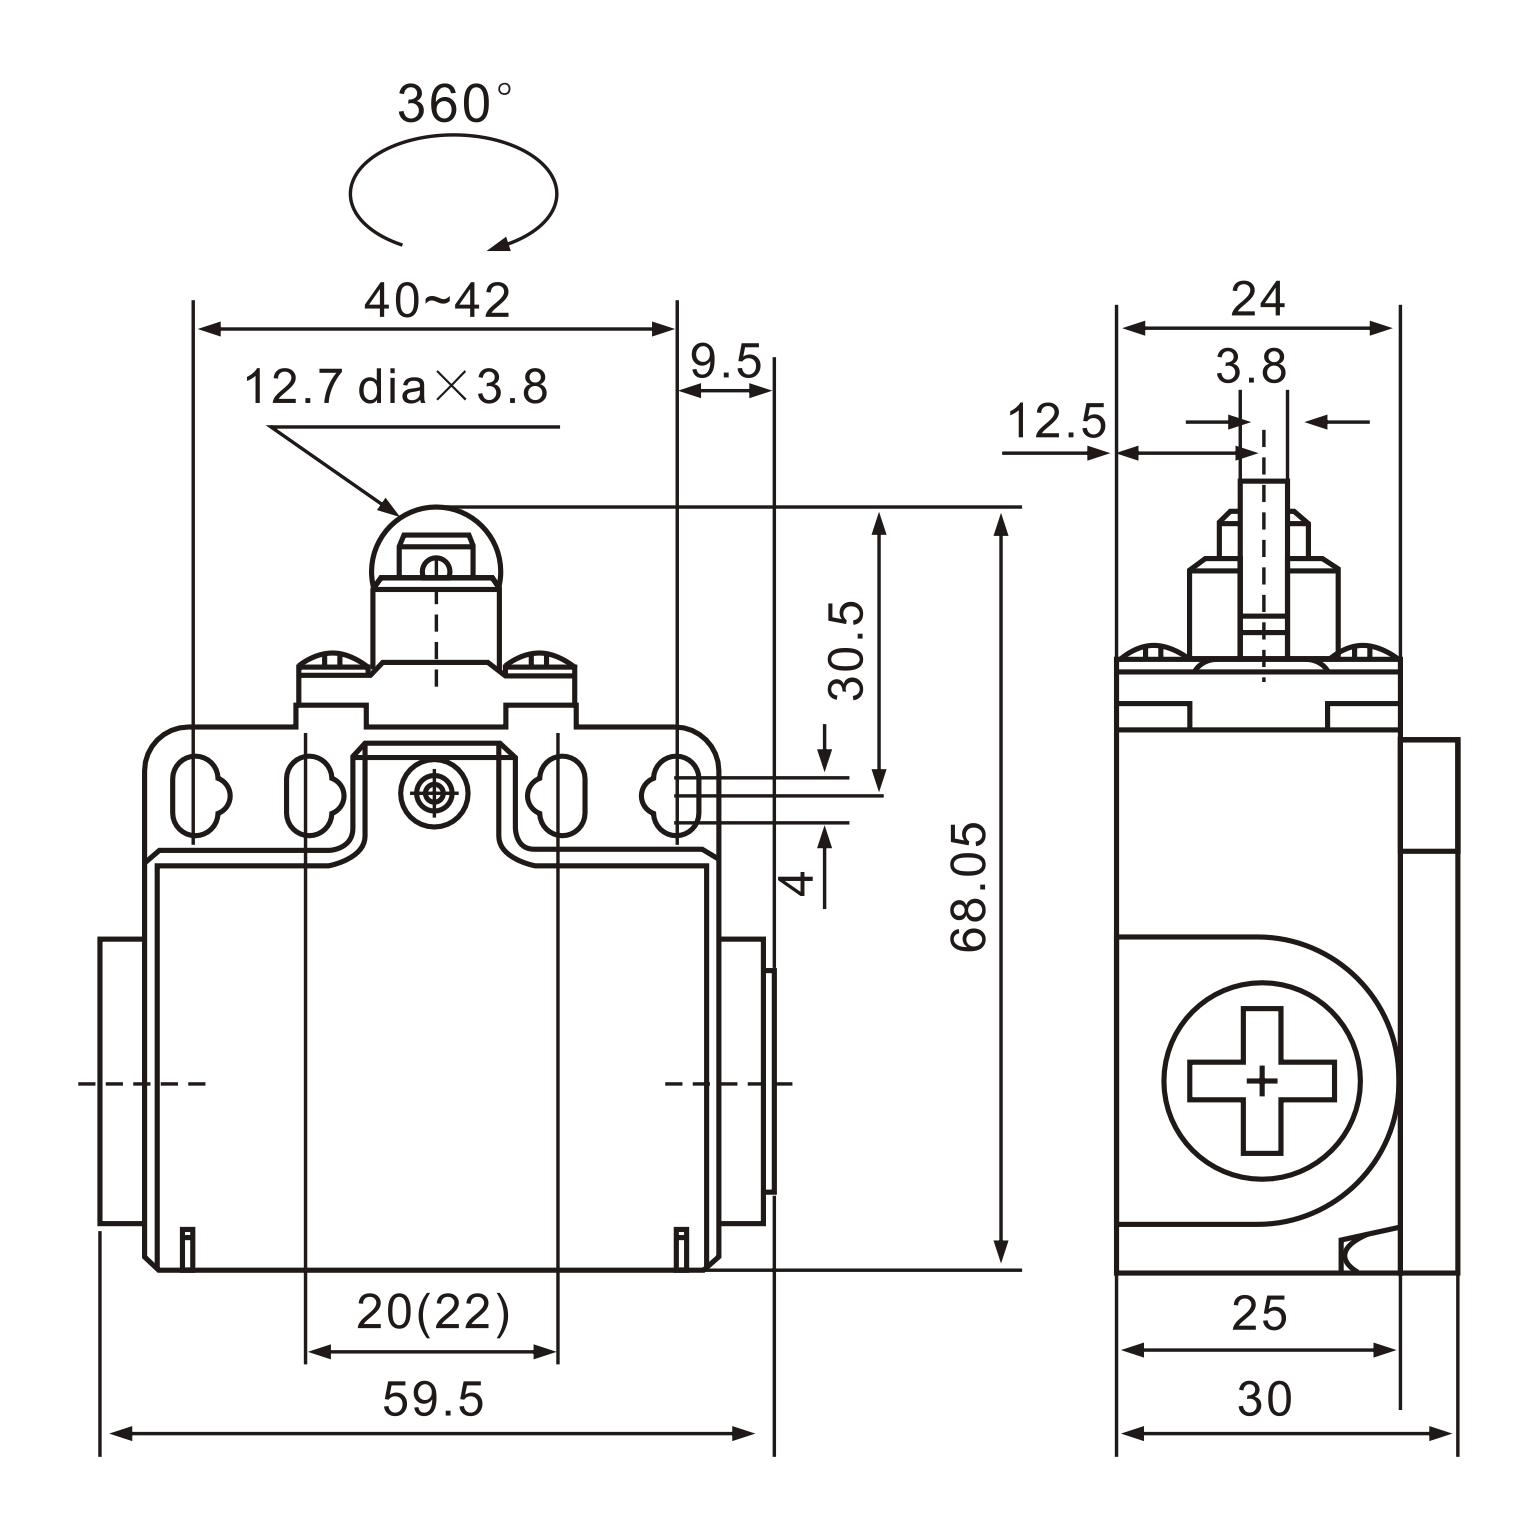 XCK-T102 Plunger Actuator Limit Switch Diagram